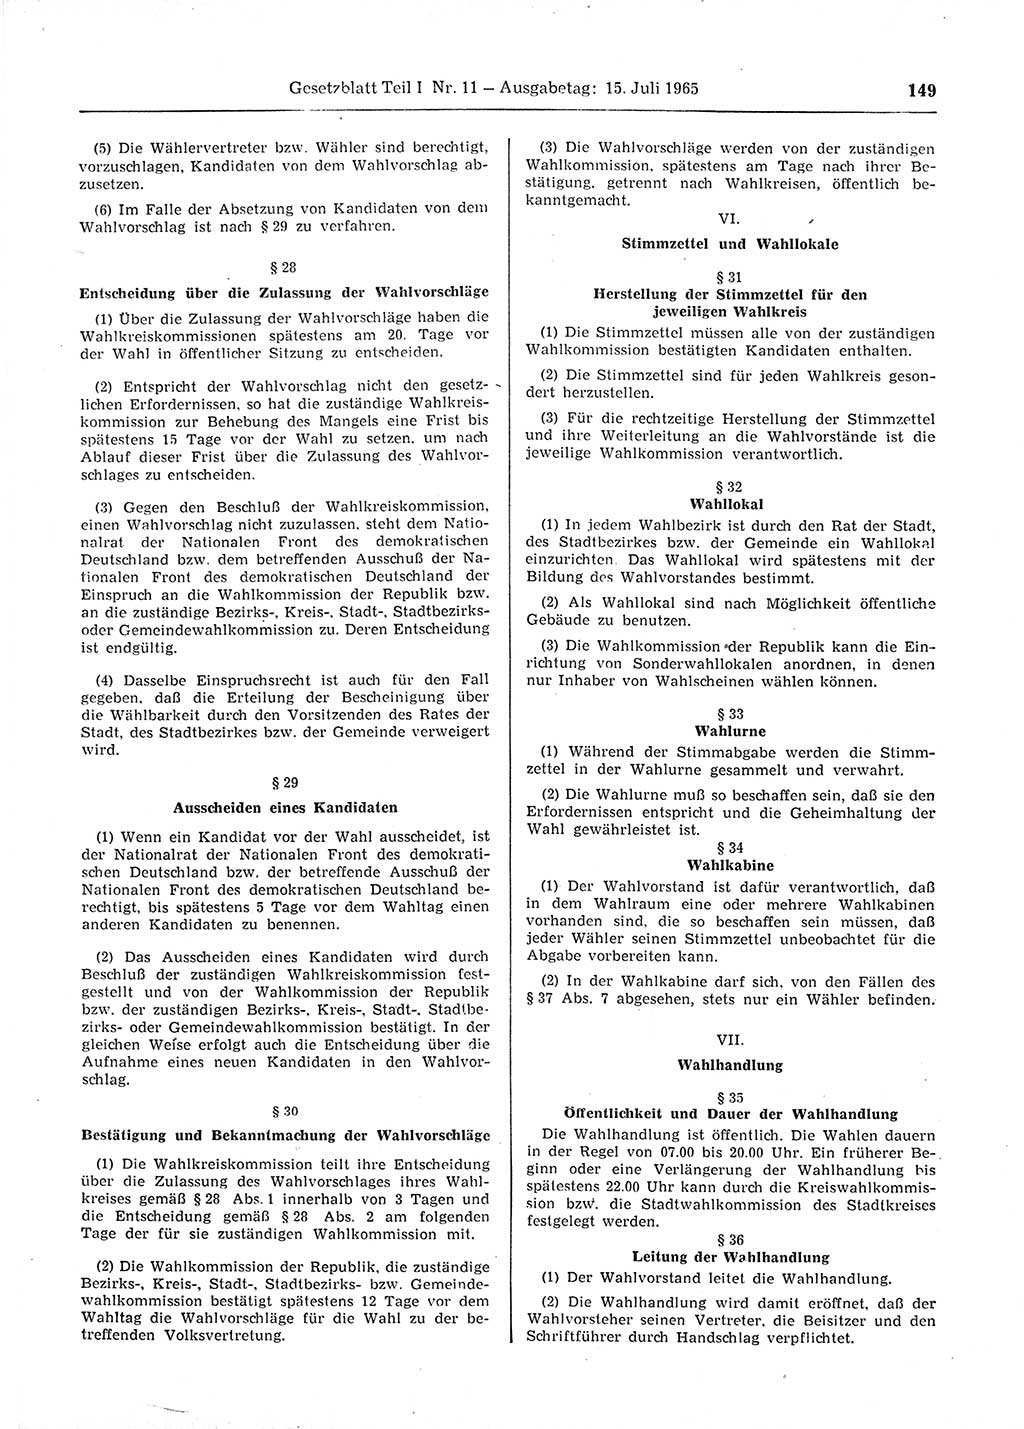 Gesetzblatt (GBl.) der Deutschen Demokratischen Republik (DDR) Teil Ⅰ 1965, Seite 149 (GBl. DDR Ⅰ 1965, S. 149)